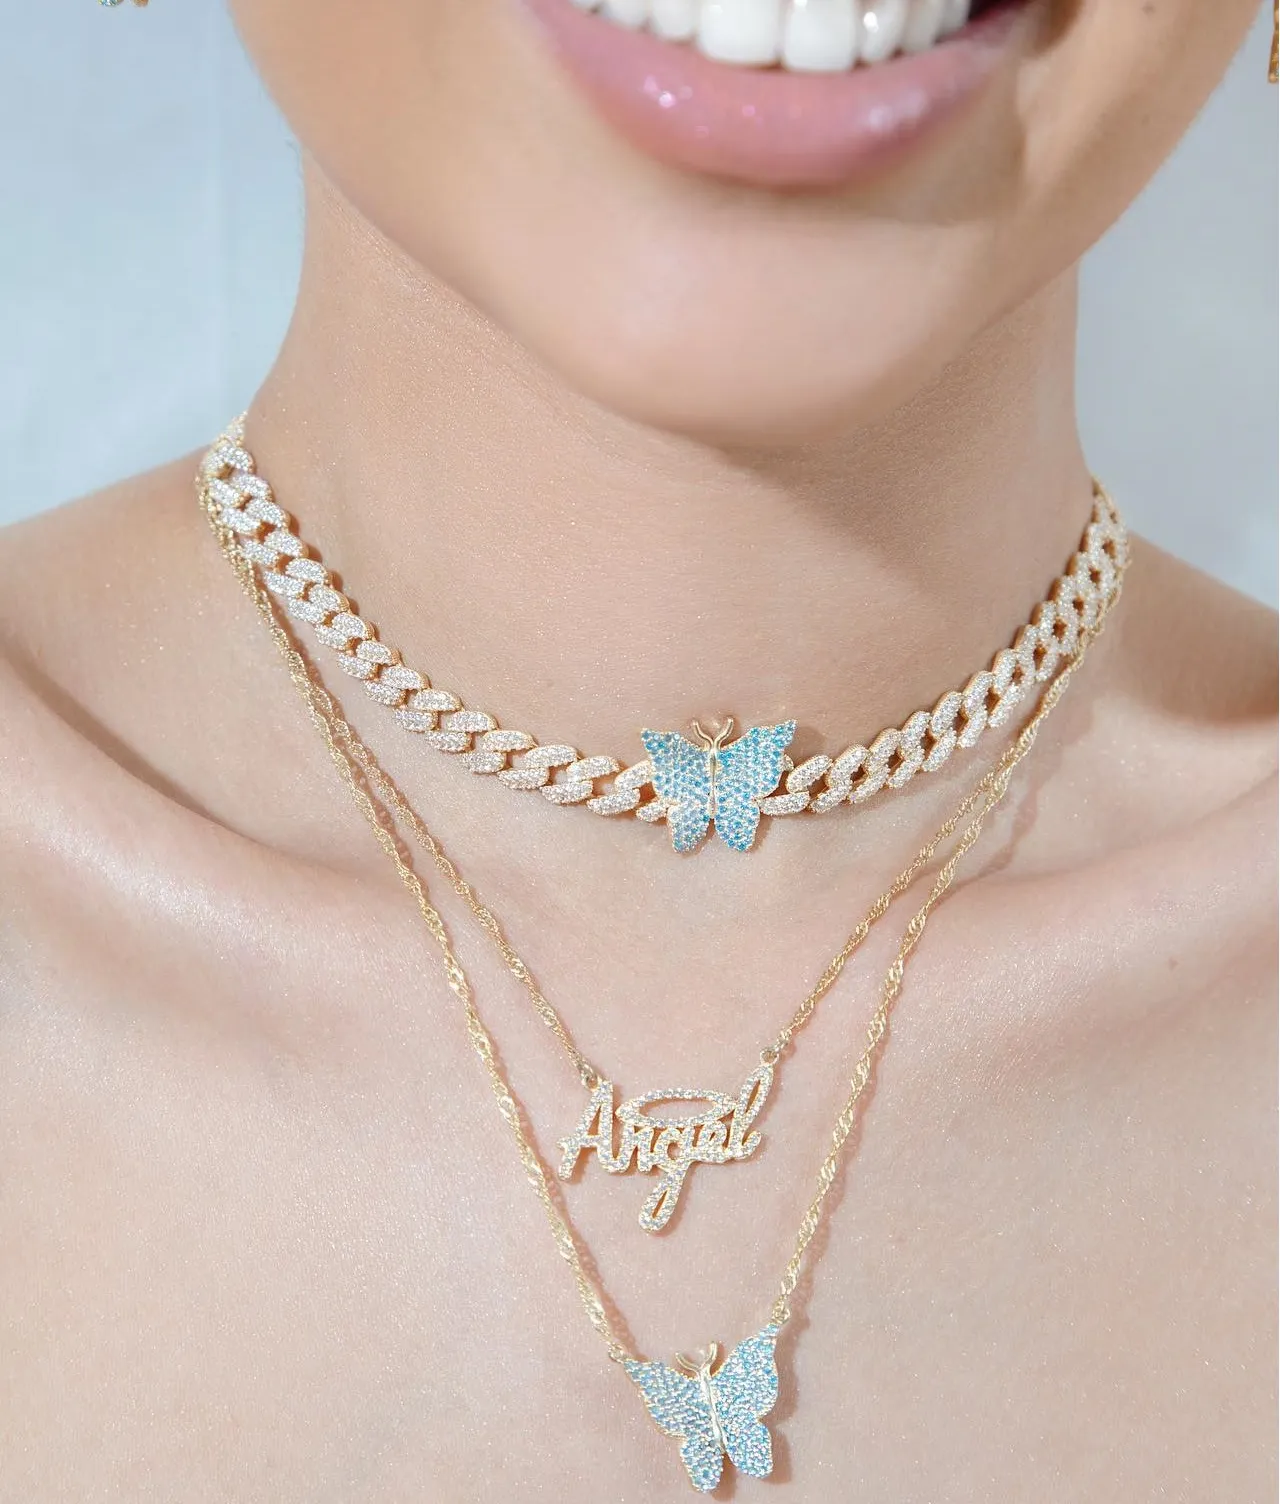 Oro Metal Color Micro Pave Azul Rosa Blanco CZ Mariposa Charm Miami Cuban Link Cadena Gargantilla Collar para Mujeres 2021 Nueva joyería de moda